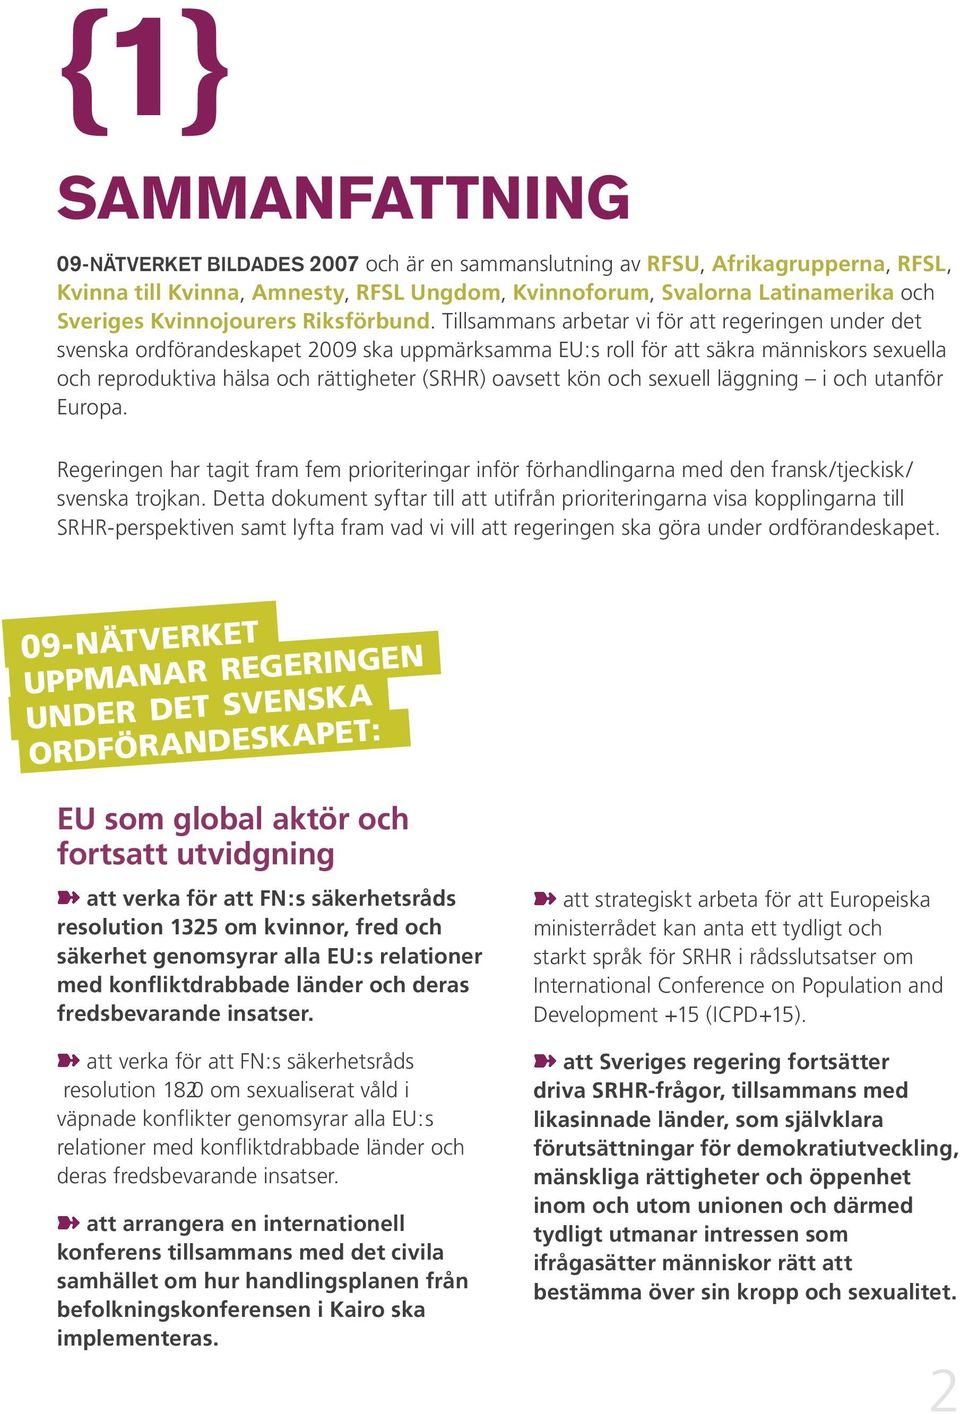 Tillsammans arbetar vi för att regeringen under det svenska ordförandeskapet 2009 ska uppmärksamma EU:s roll för att säkra människors sexuella och reproduktiva hälsa och rättigheter (SRHR) oavsett